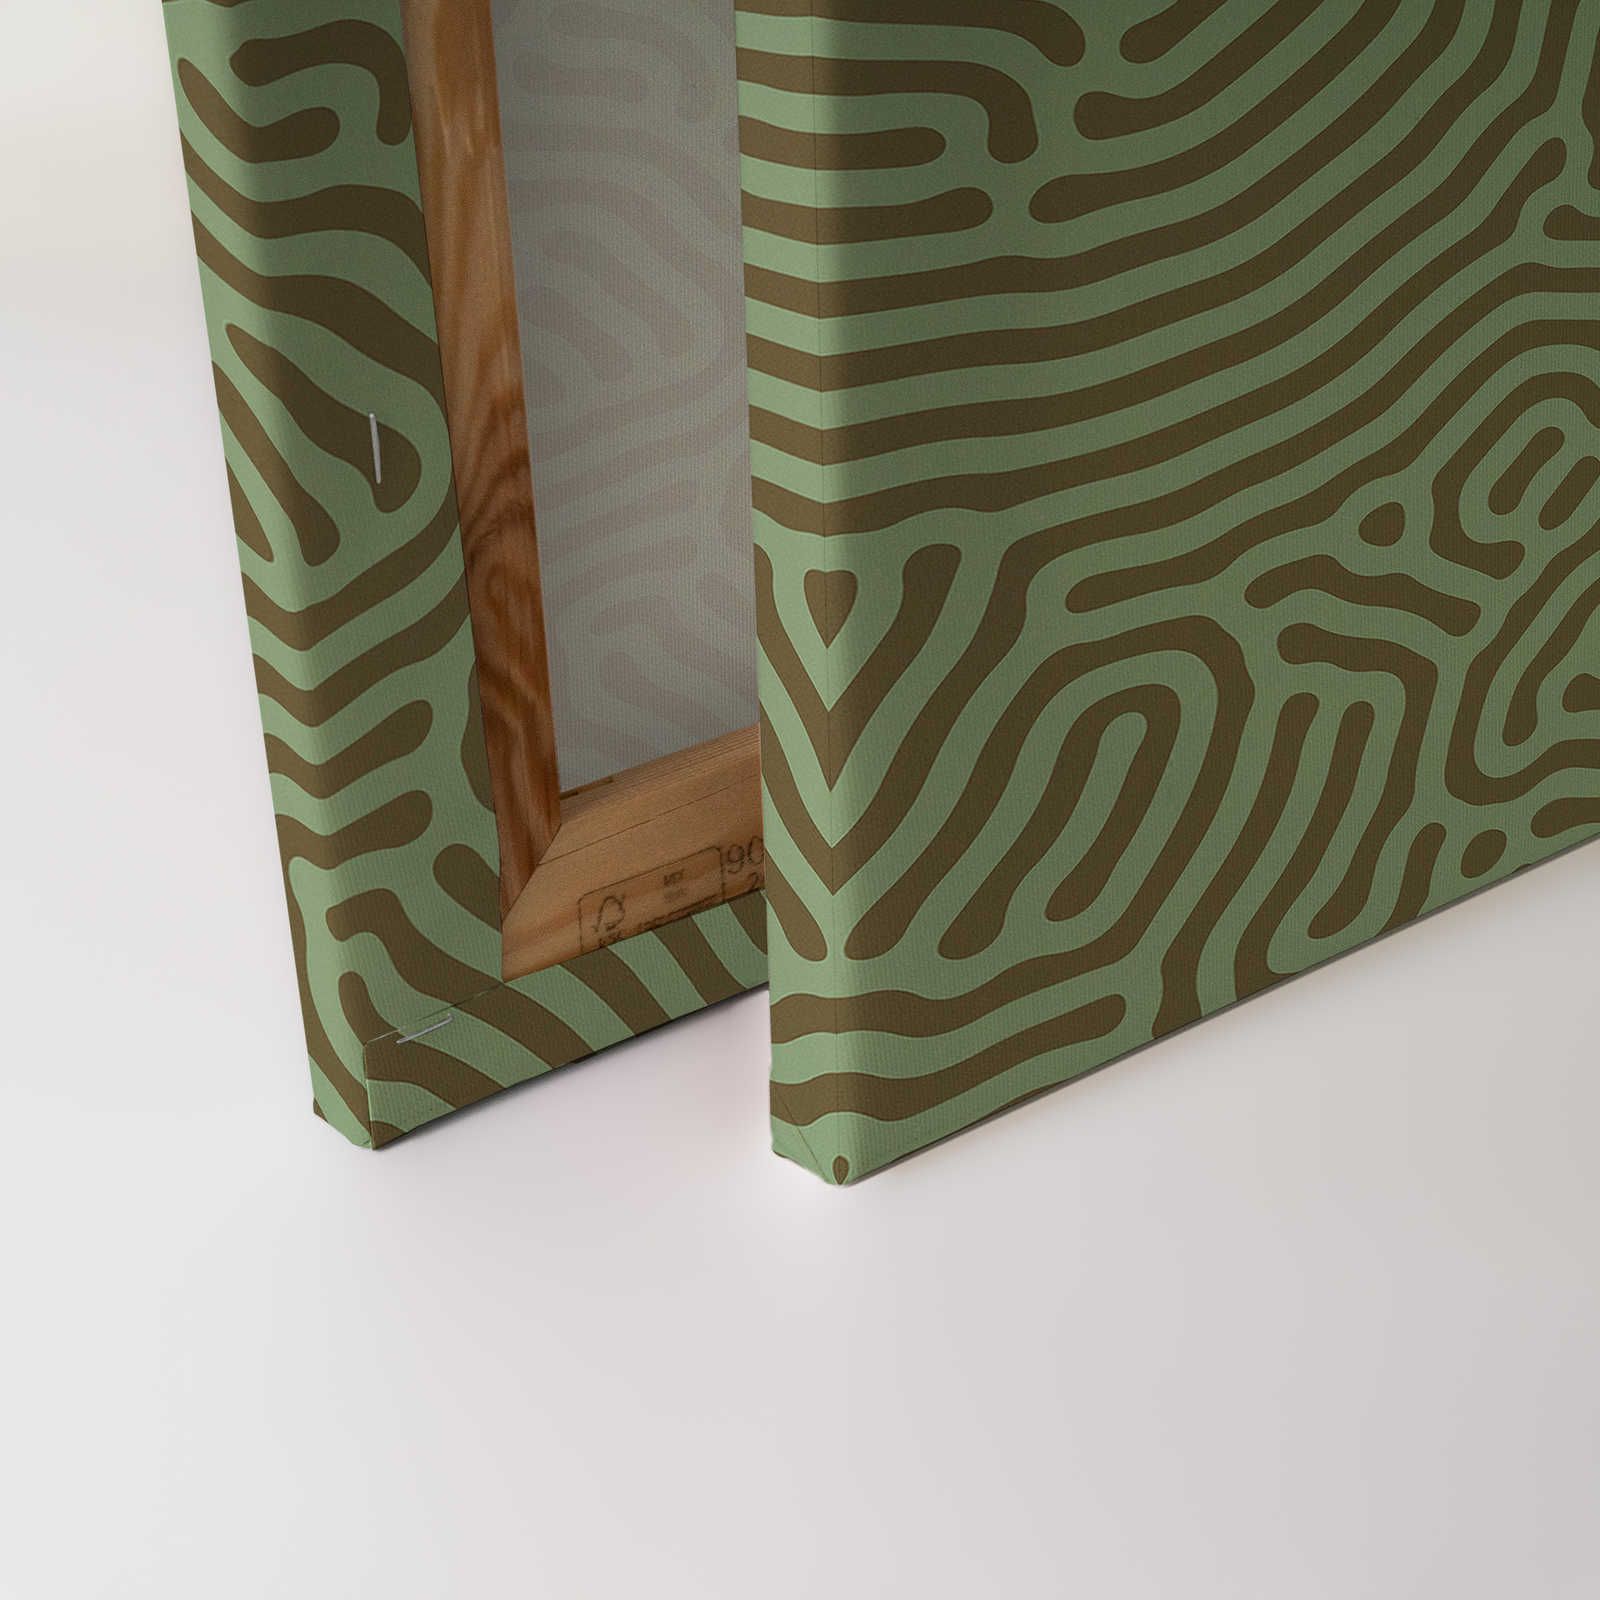             Sahel 1 - Quadro su tela verde con motivo a labirinto Verde salvia - 0,90 m x 0,60 m
        